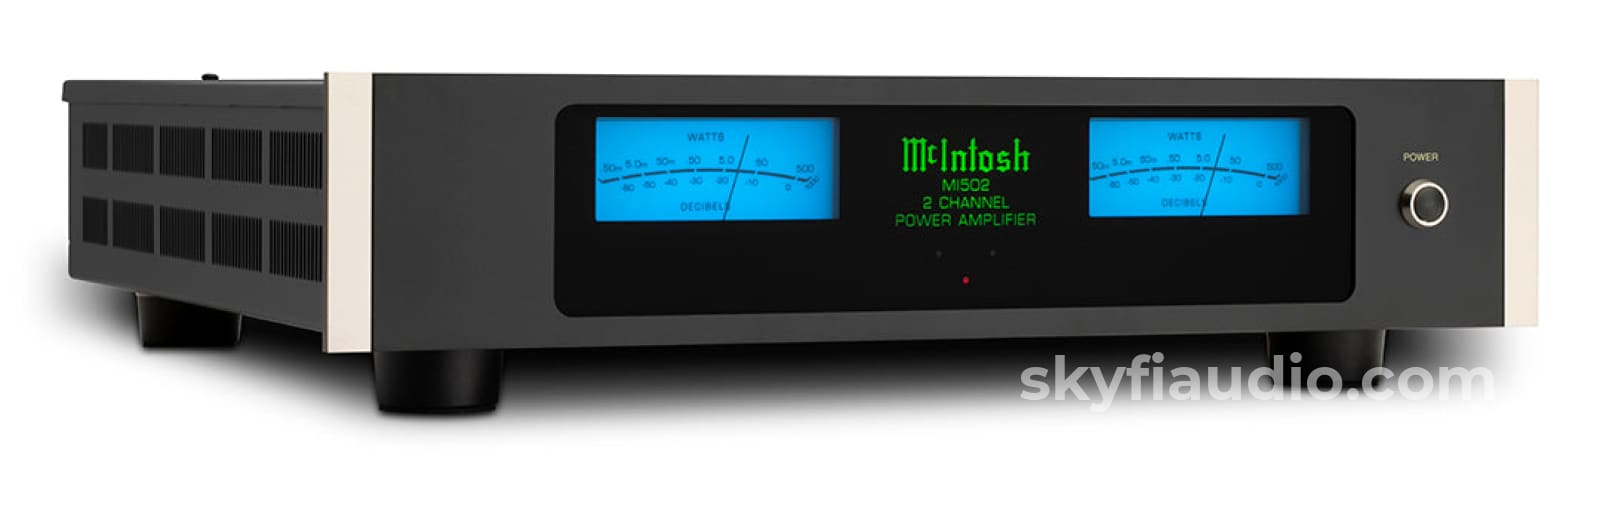 Mcintosh Mi502 Digital Amplifier